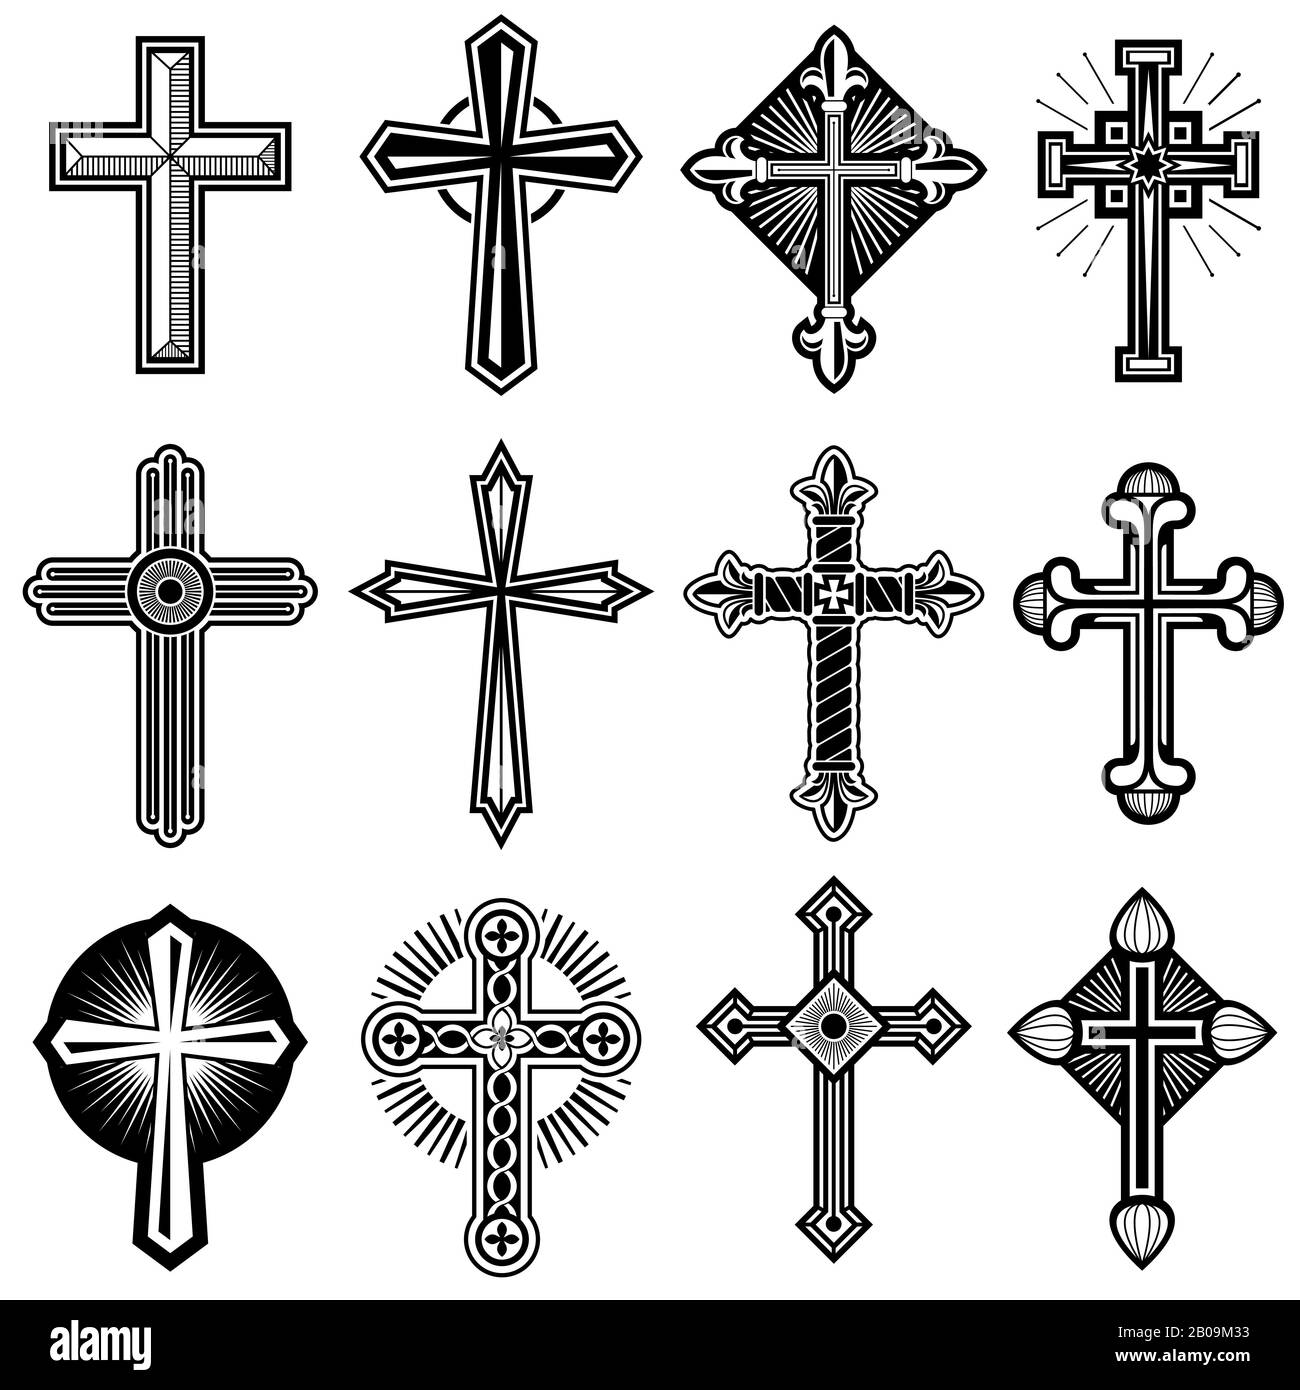 Croce cristiana cattolica con icone vettoriali ornamento. Insieme di croci religiose, illustrazione di croce bianca nera di cristo Illustrazione Vettoriale